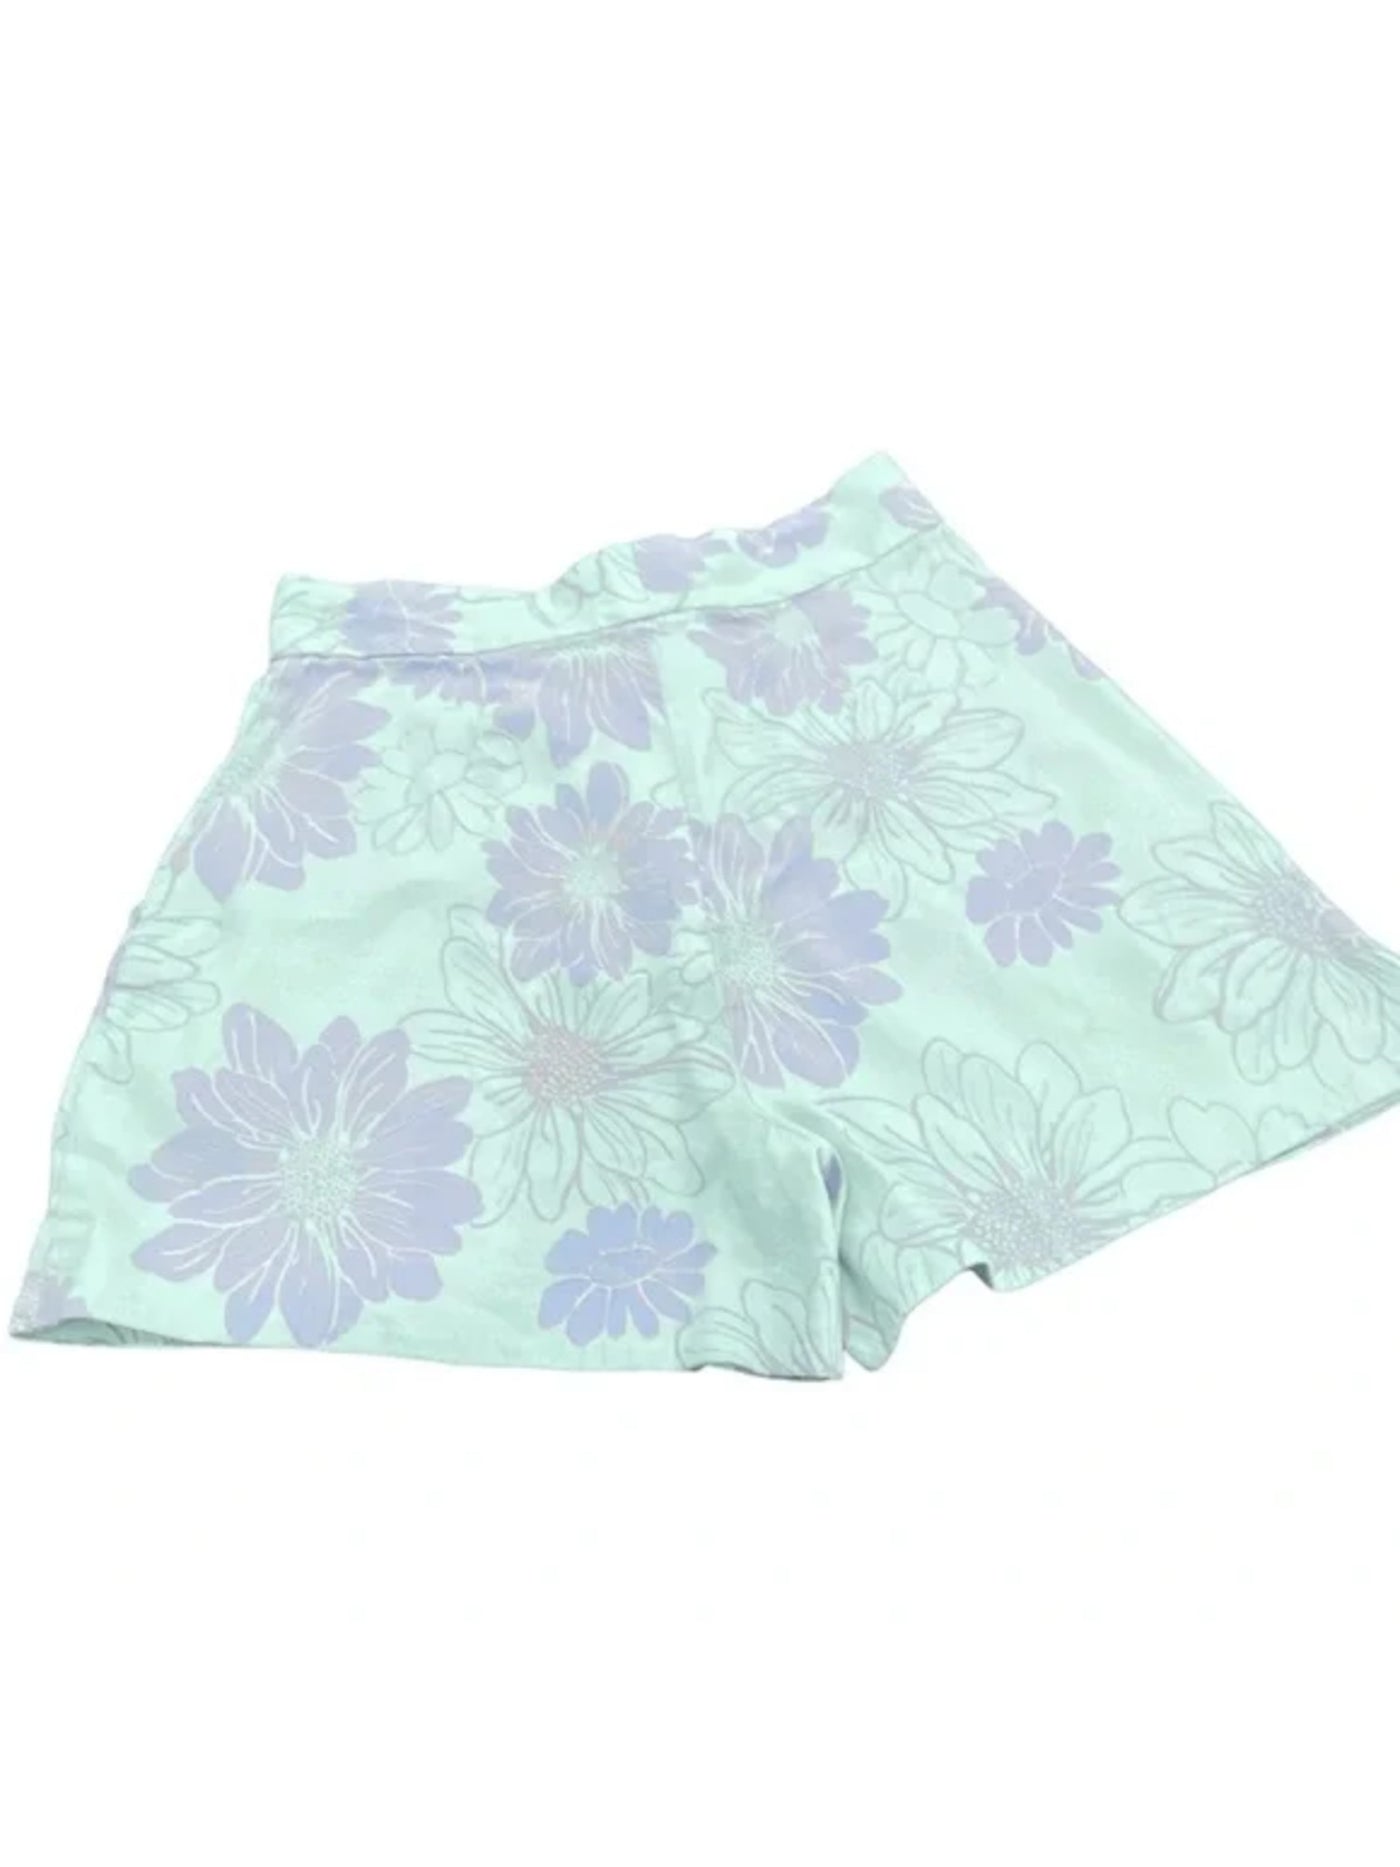 LEYDEN Womens Aqua Zippered Pocketed Wide Leg Floral High Waist Shorts M